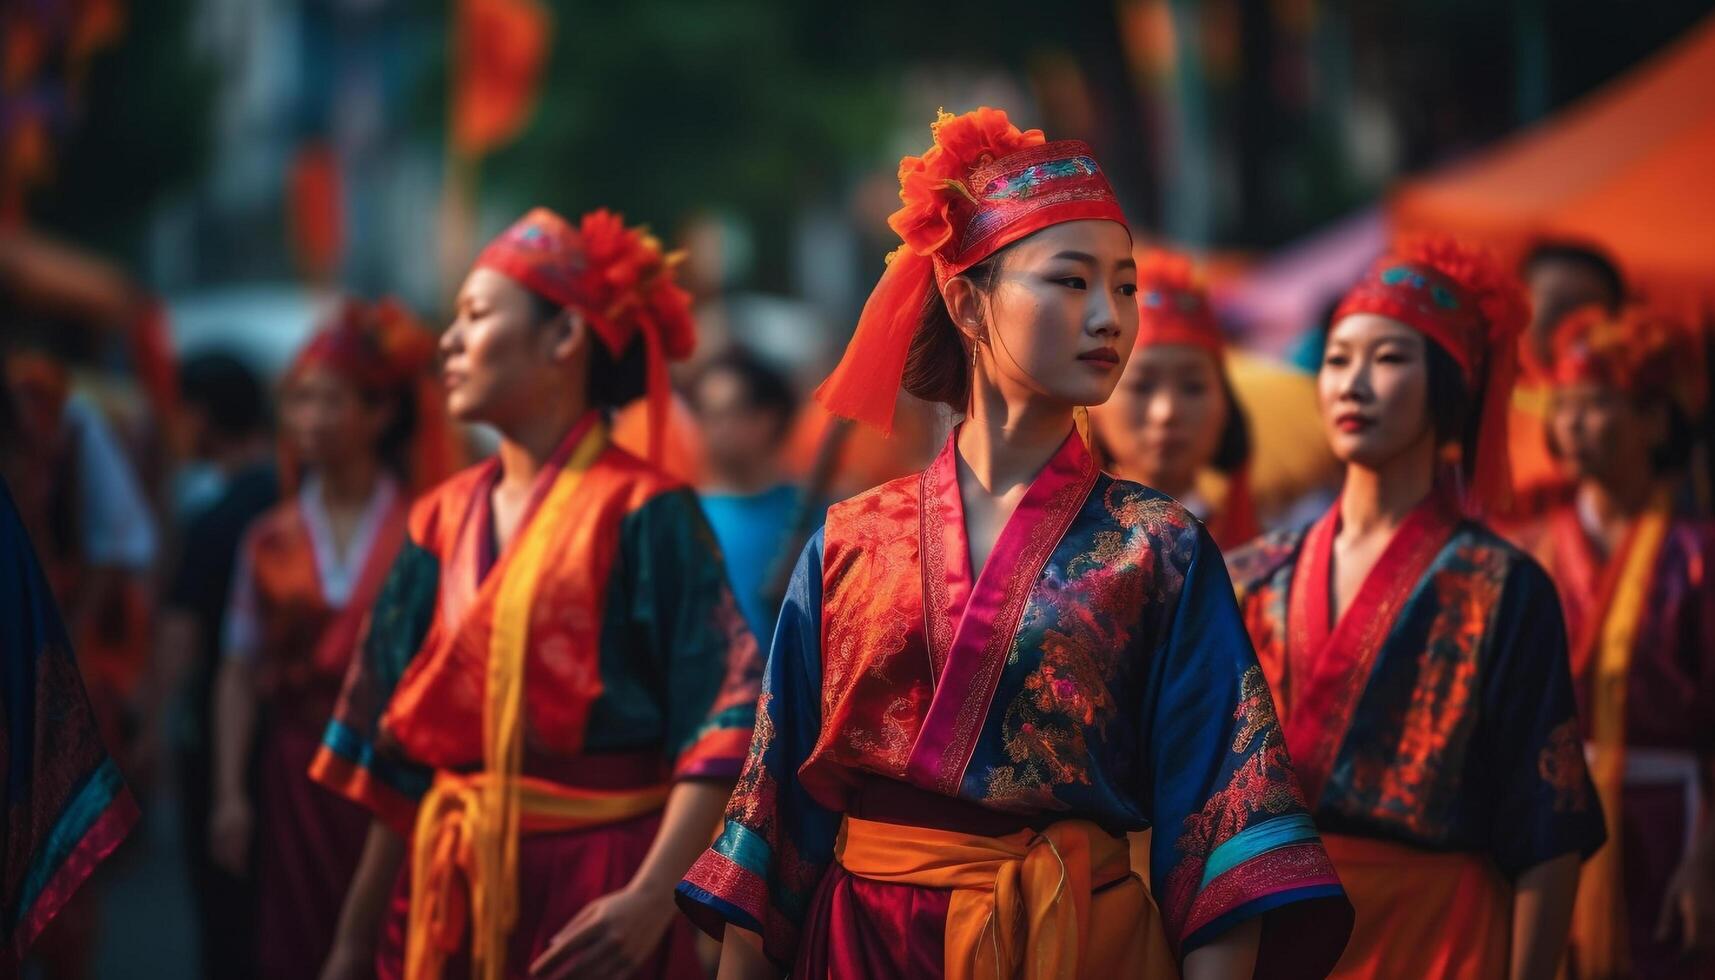 colorida tradicional festival comemora indígena culturas com dançando e performances gerado de ai foto